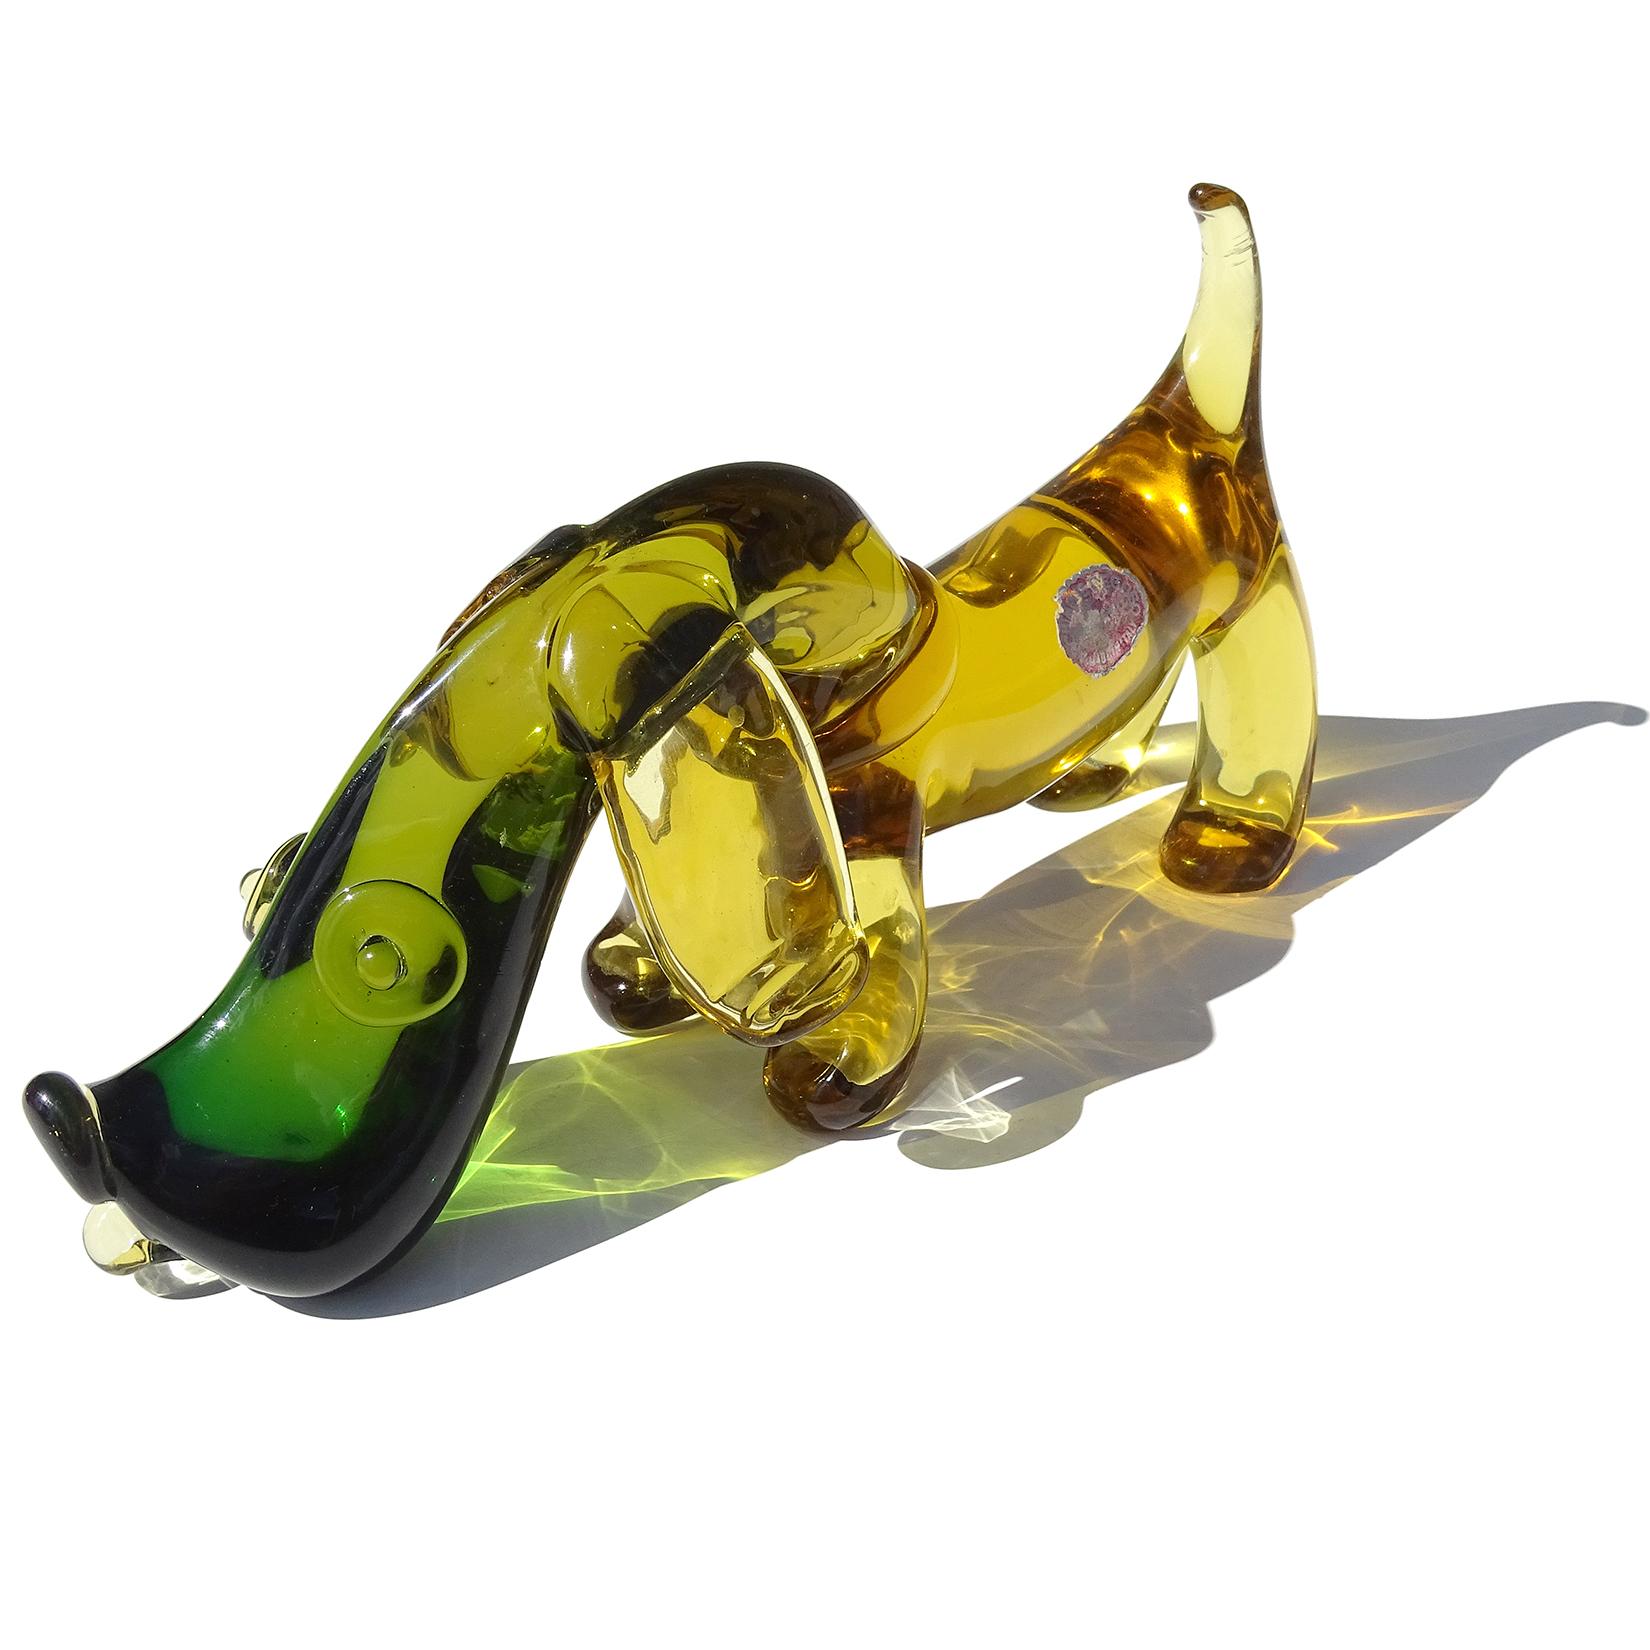 Magnifique et charmante sculpture en verre d'art italien Sommerso soufflé à la main de Murano, jaune miel, orange et vert, représentant un chiot Dachshund. Documenté au designer Archimede Seguso, avec l'étiquette usée « Archimede Seguso - Murano -